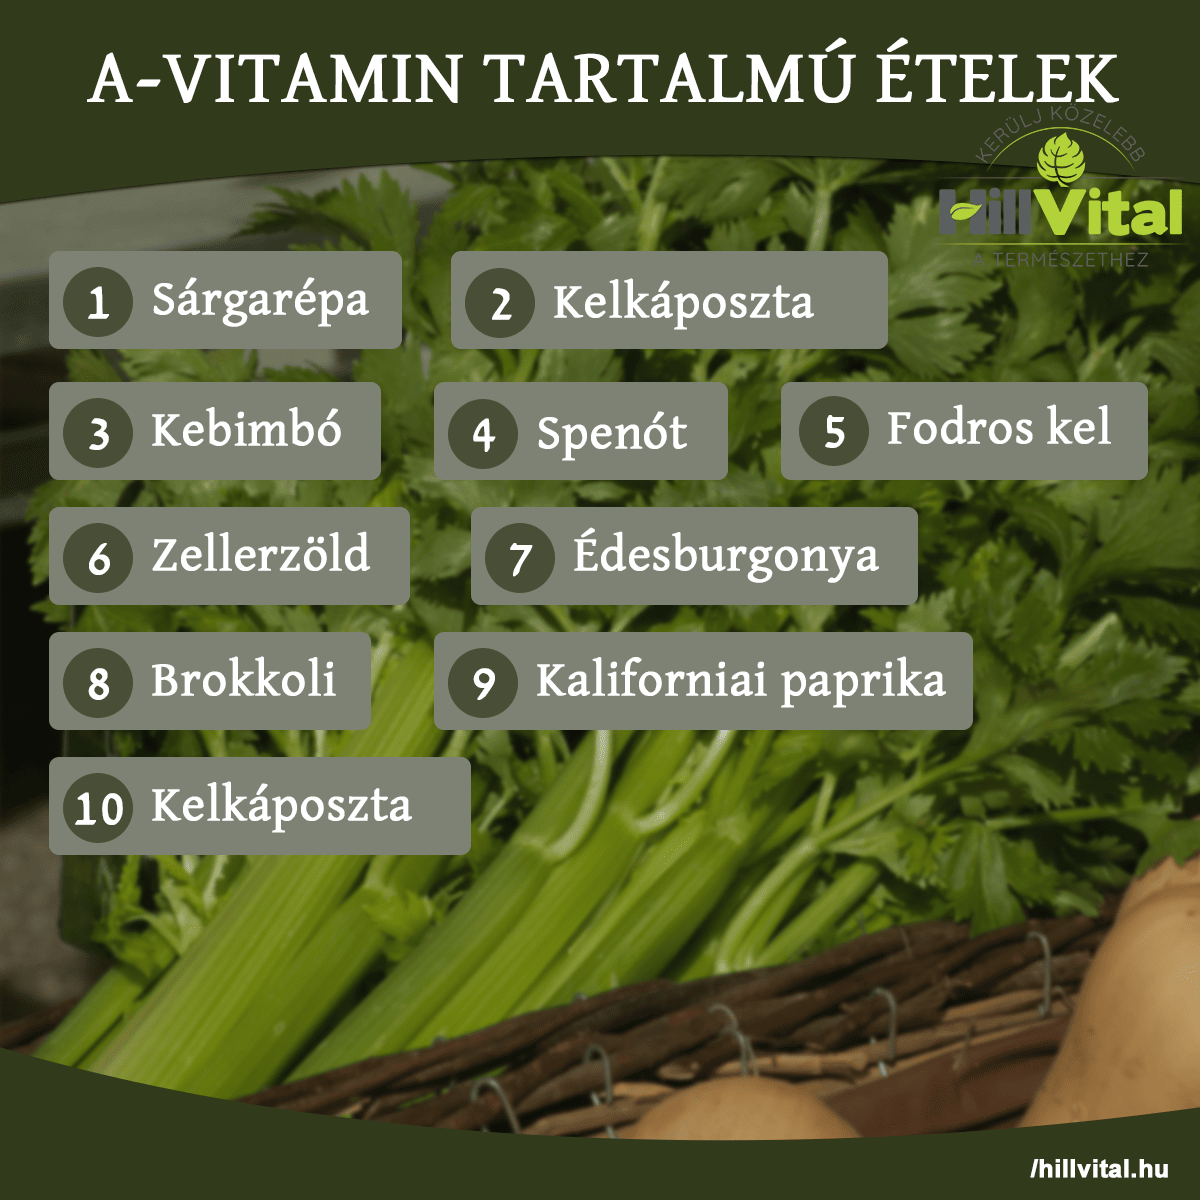 A-vitamin tartalmú ételek